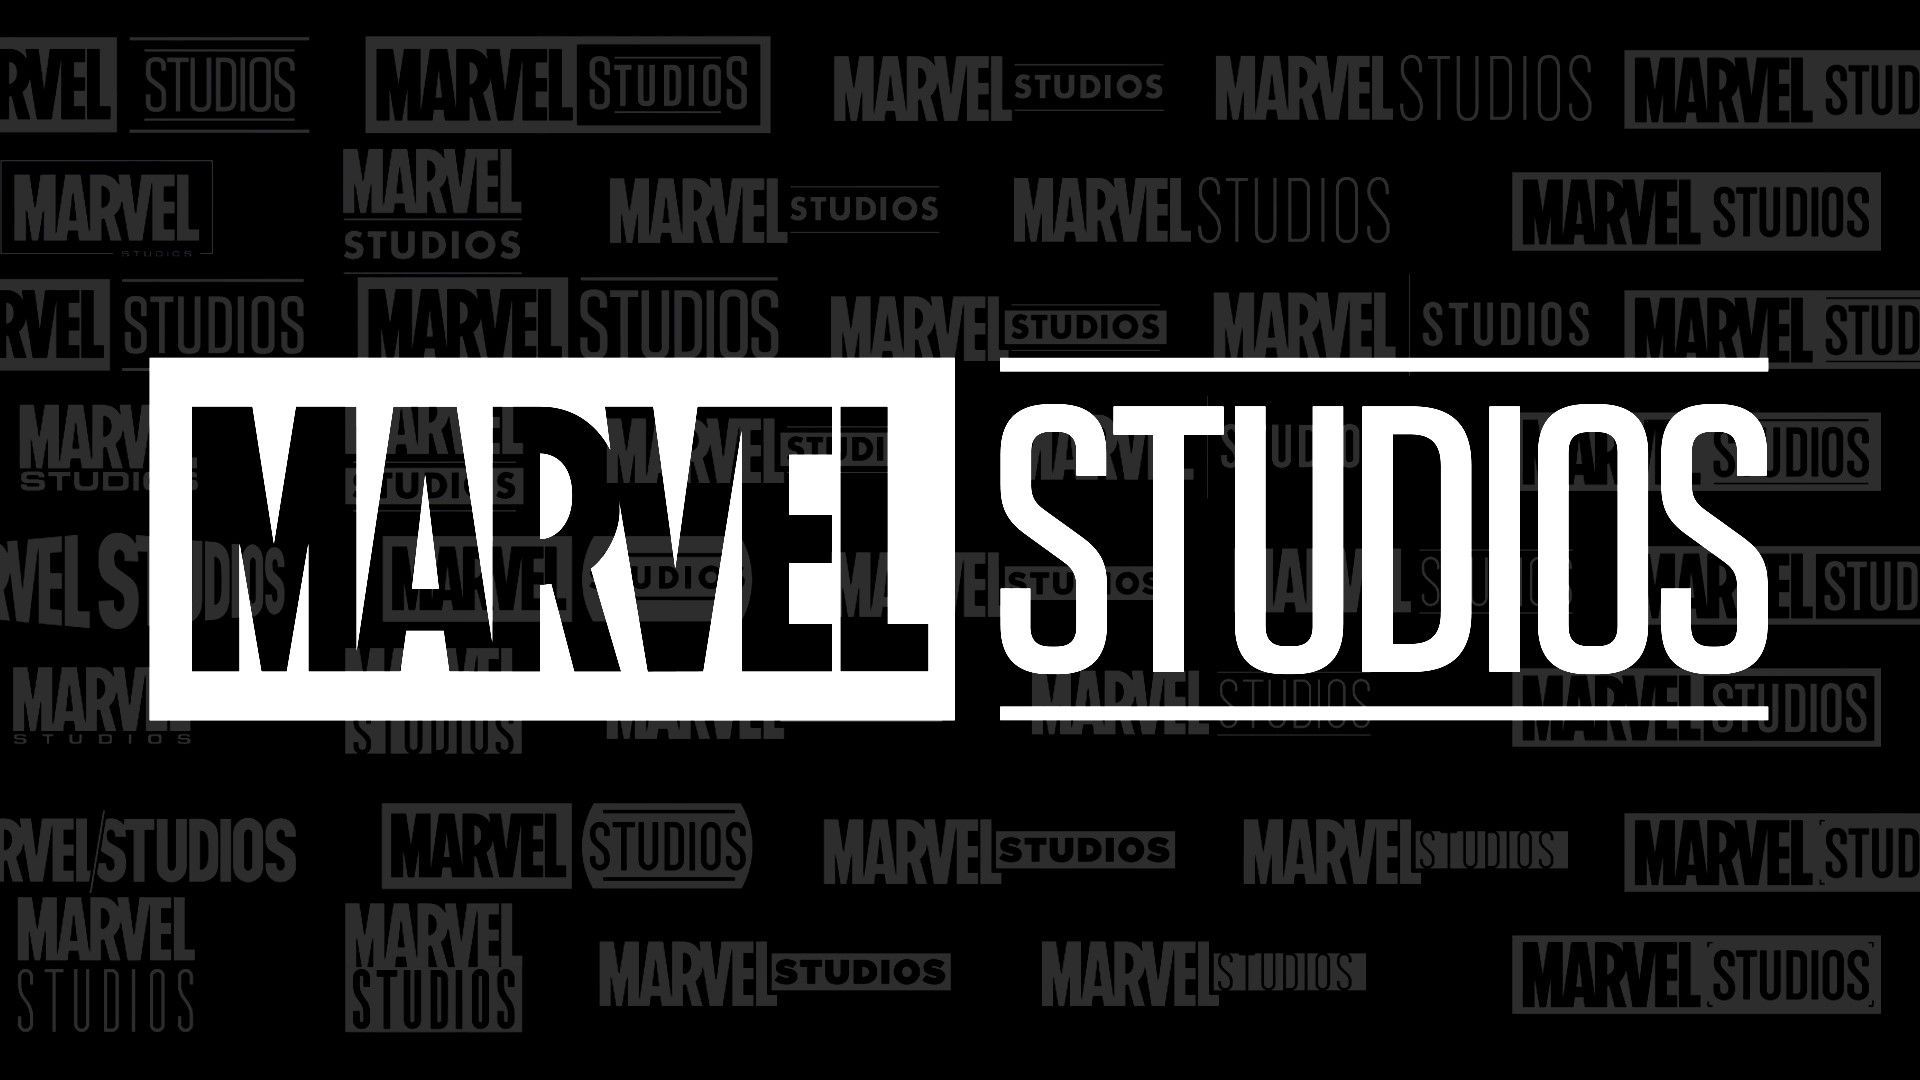 Marvel Studios Desktop Wallpapers on